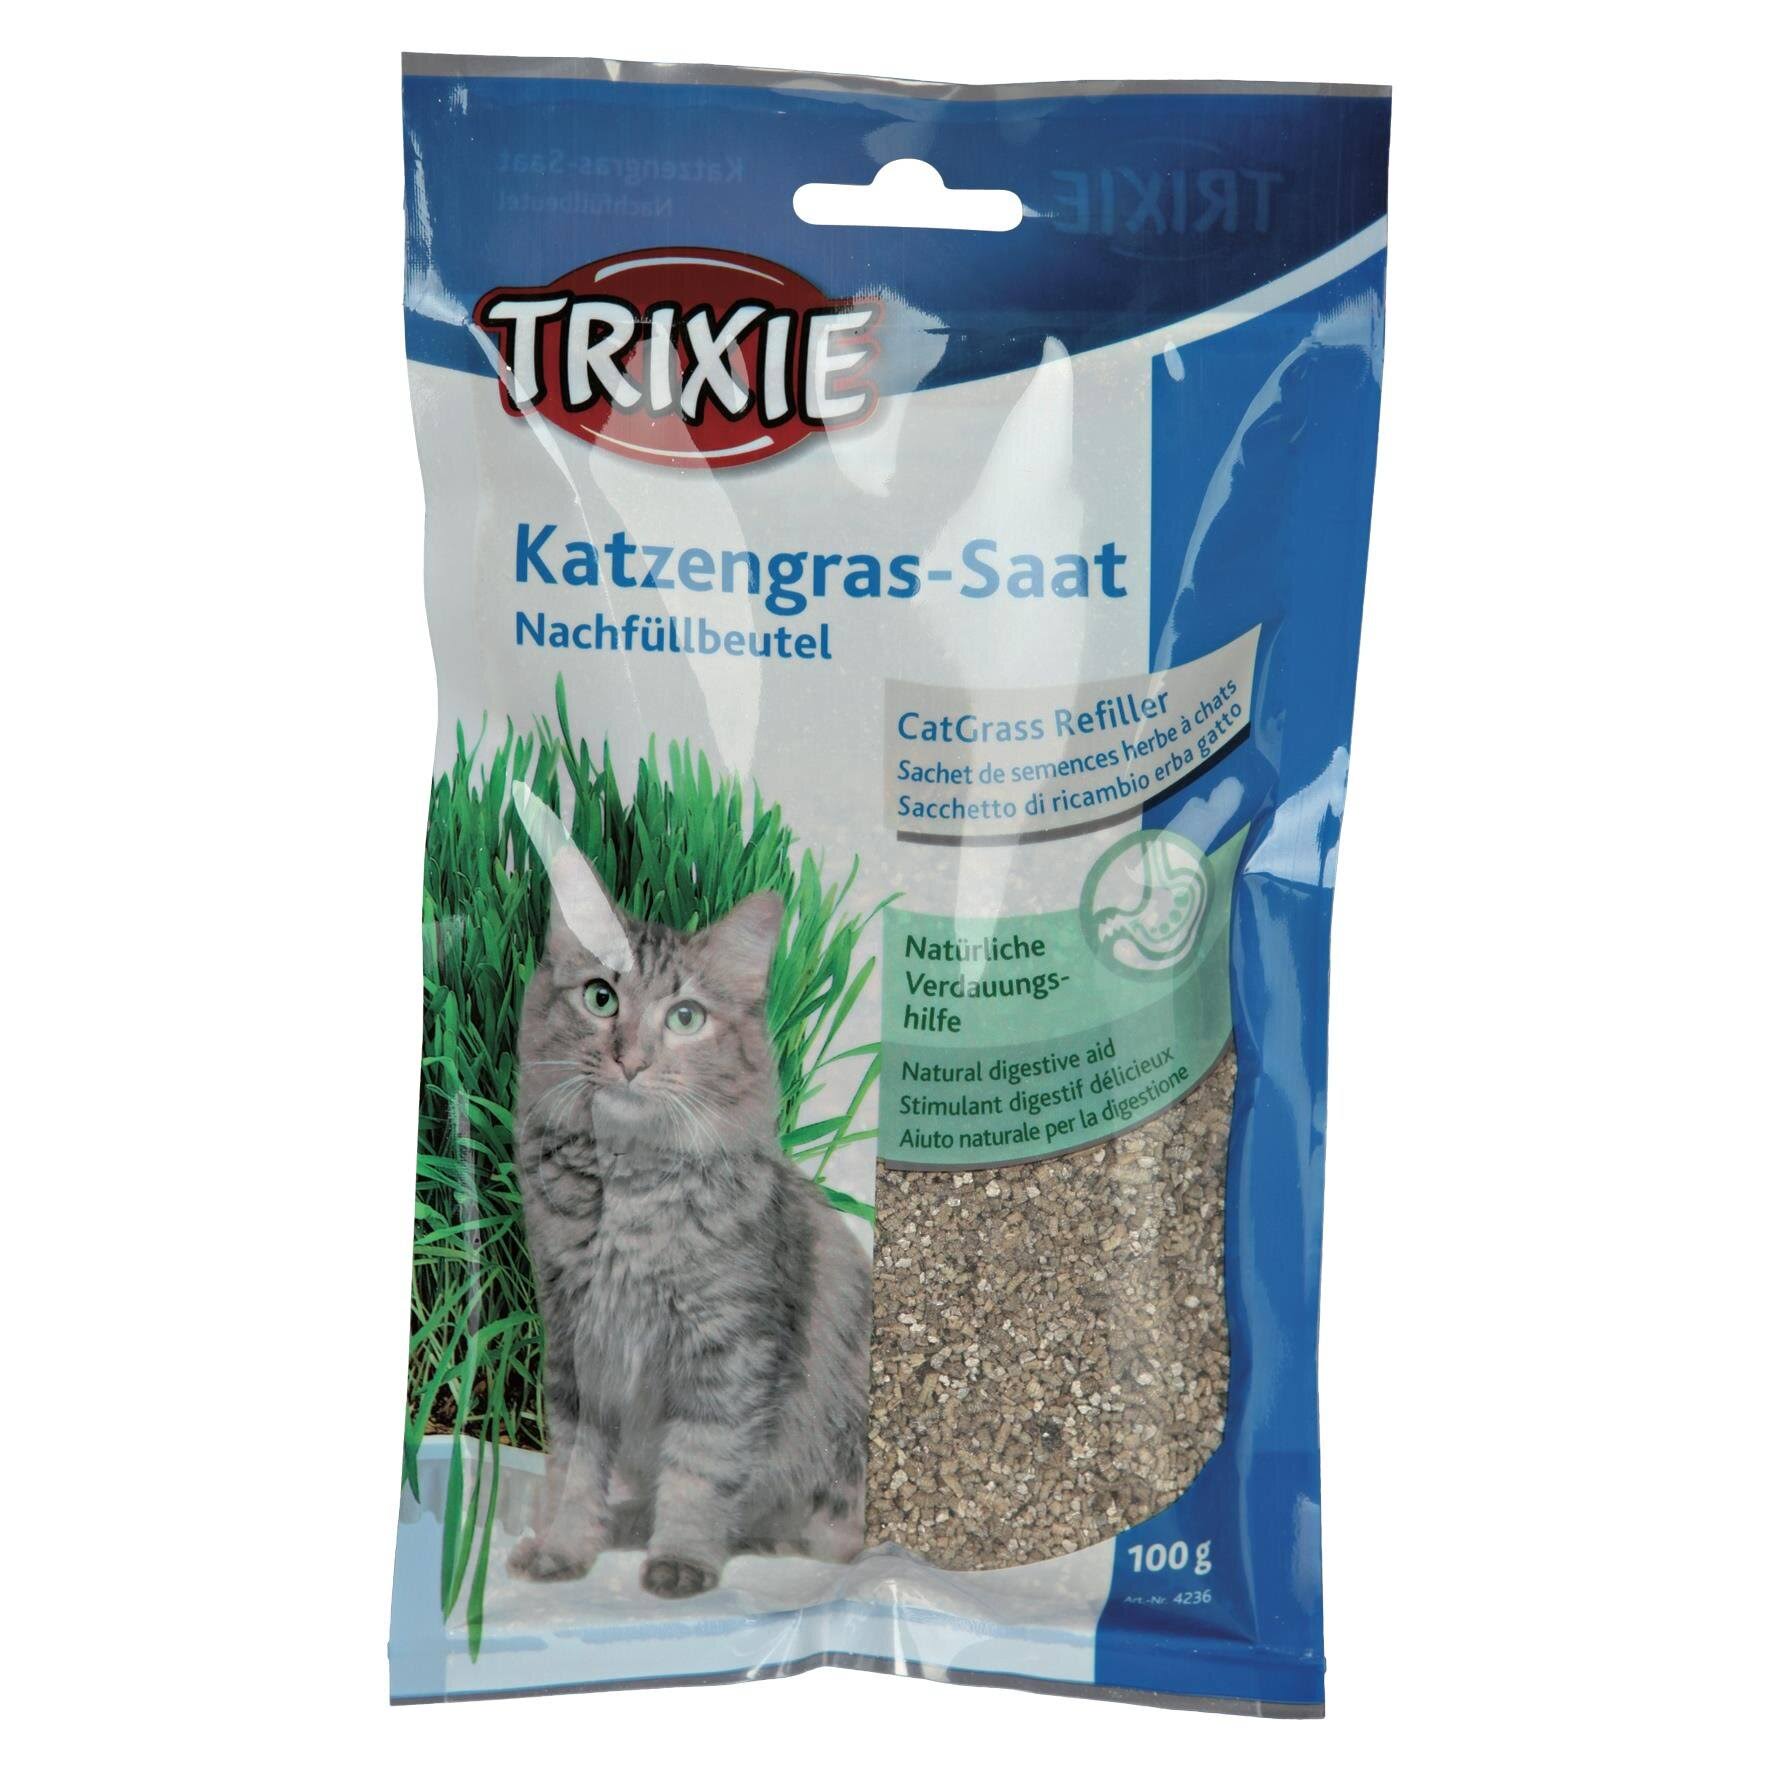 Trixie Cat Grass Refill - 100g